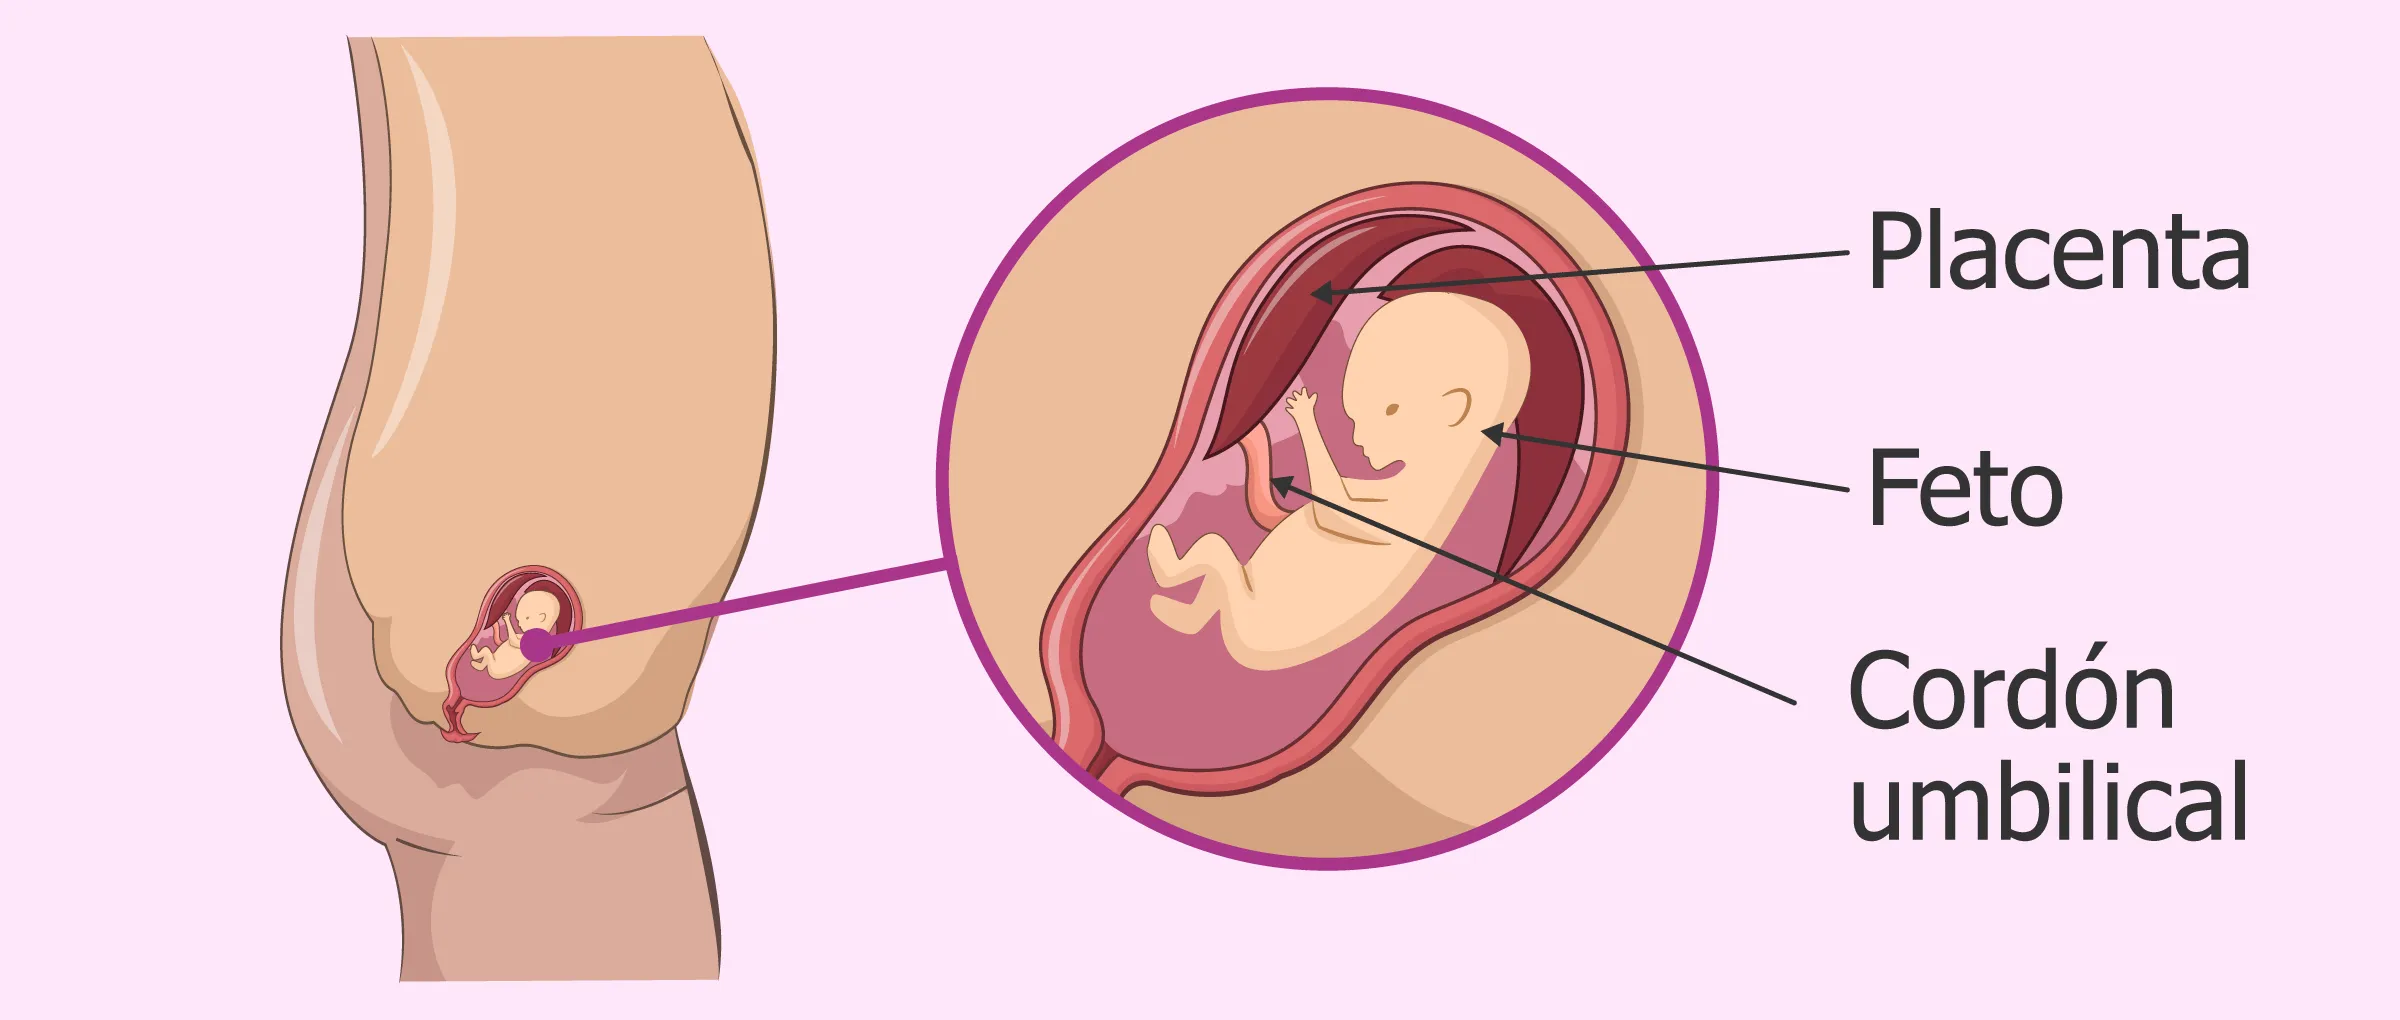 3 meses de embarazo: desarrollo del feto y síntomas en la mujer